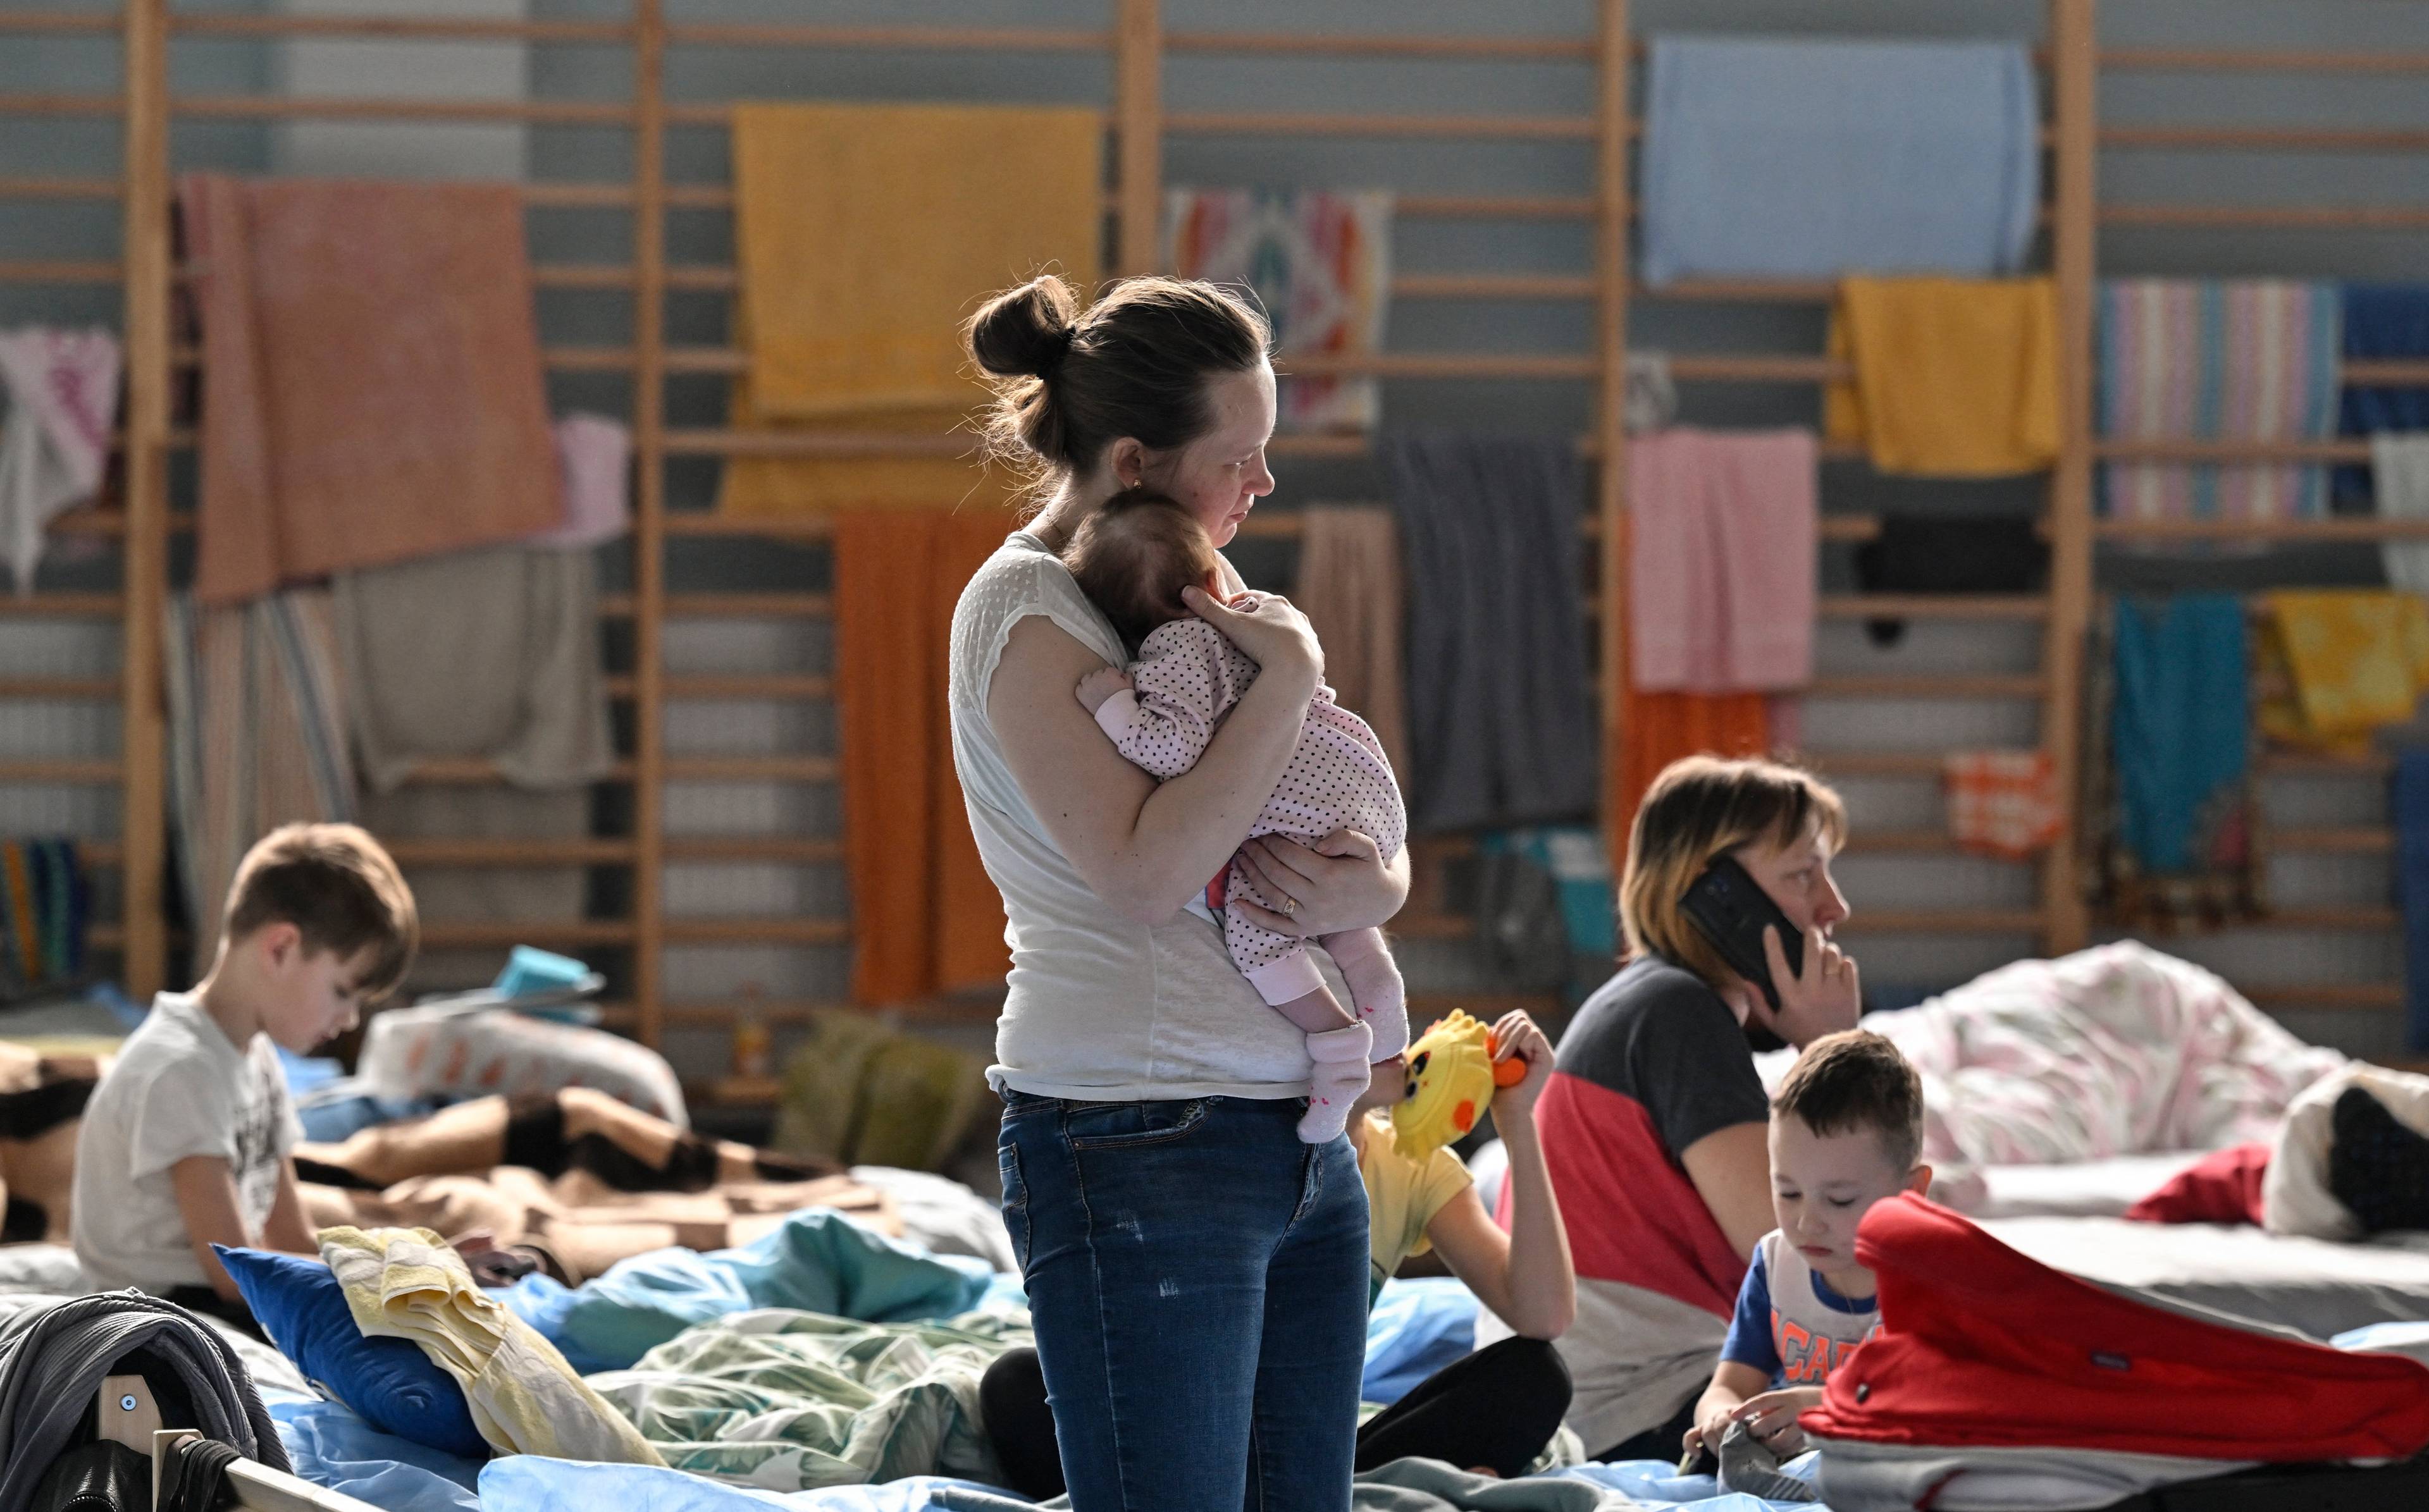 Kobieta trzyma na rękach niemowlaka, w tle łóżka, na których siedzą inne kobiety